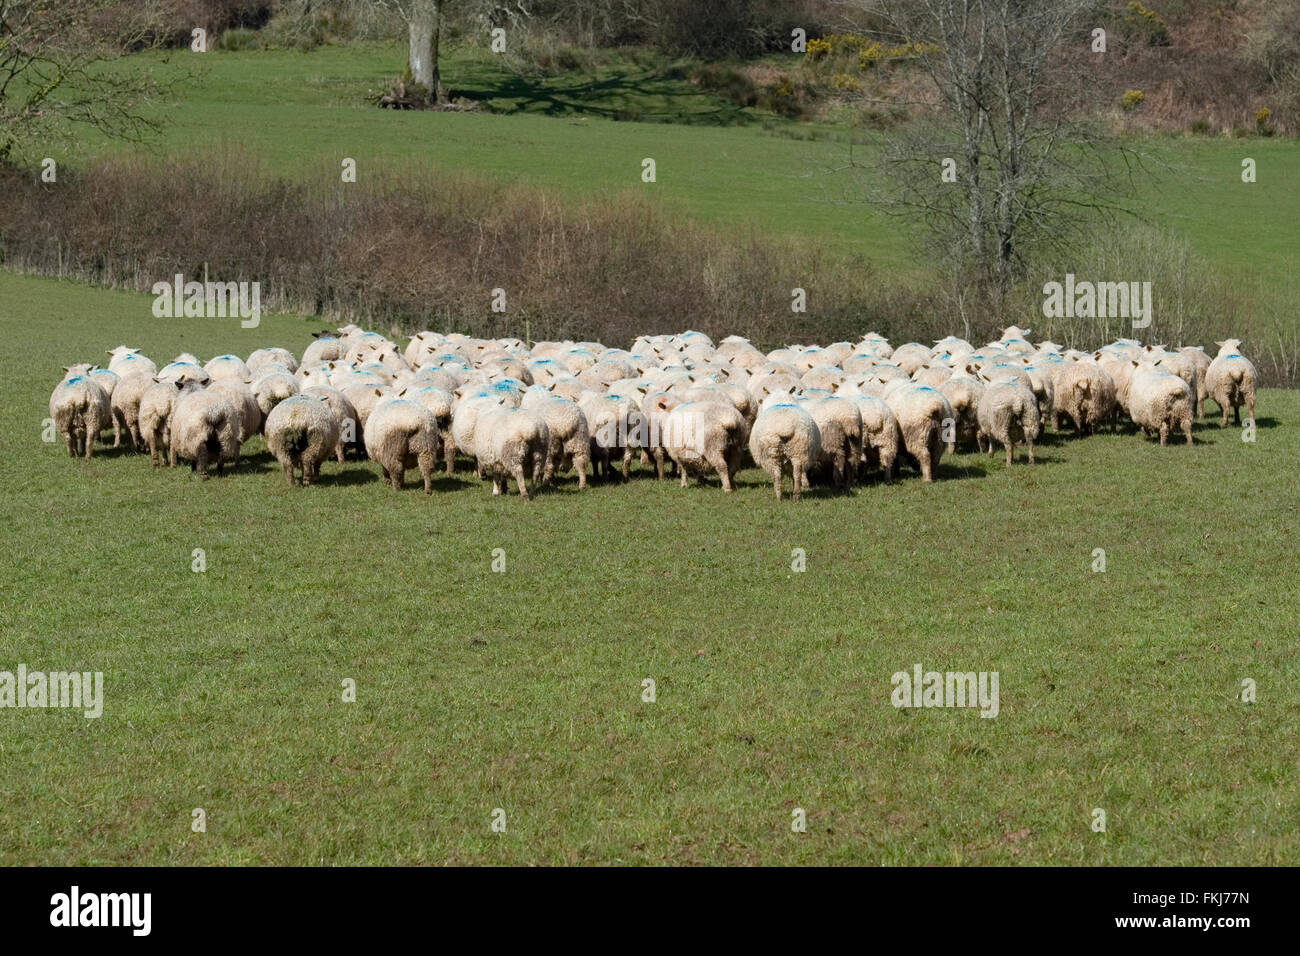 Les moutons s'enfuyant Banque D'Images